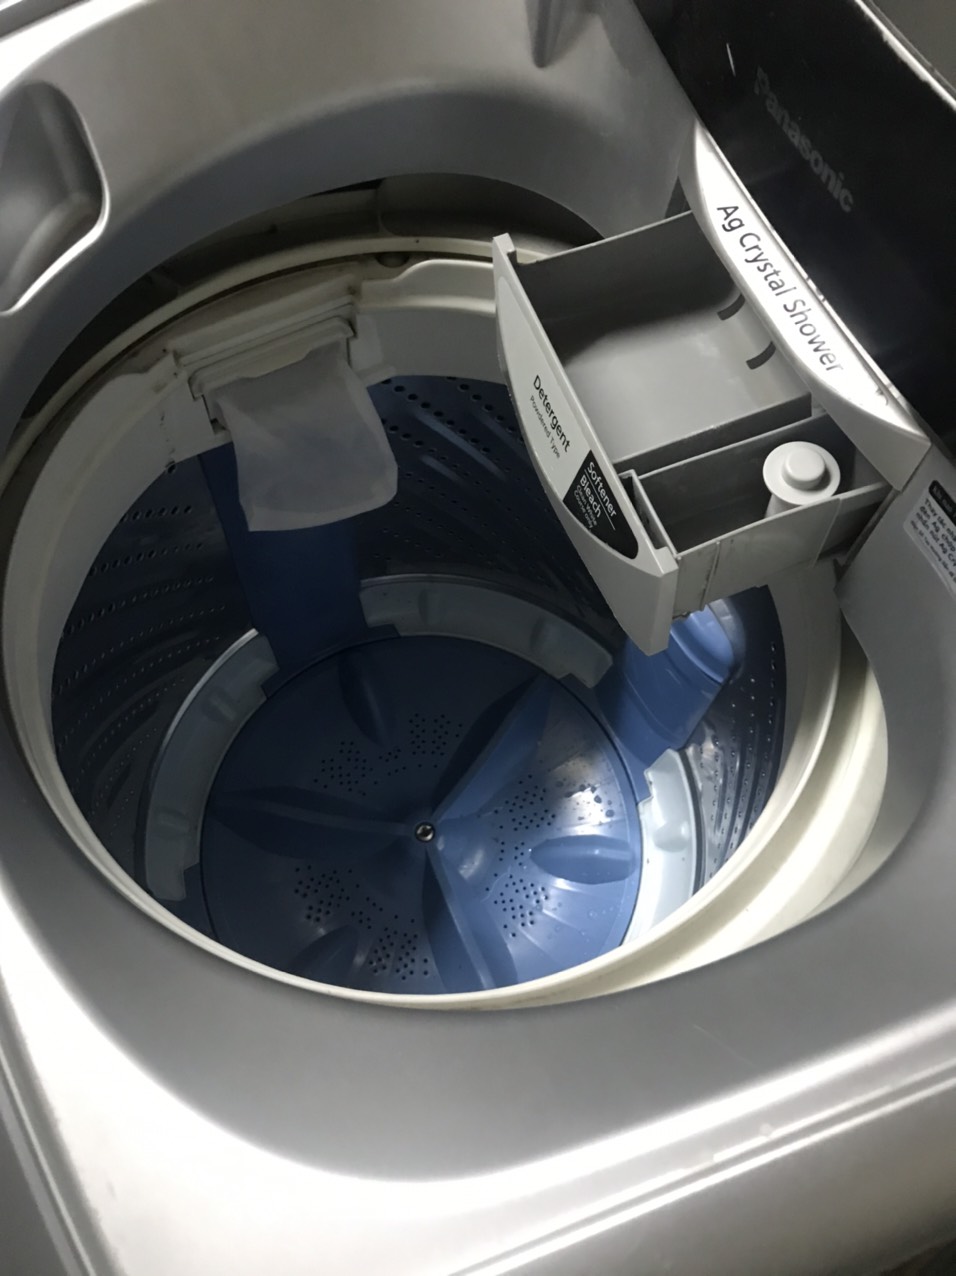 Máy Giặt PANASONIC 8kg Nguyên zing 100% ngoại hình mới đẹp 93%